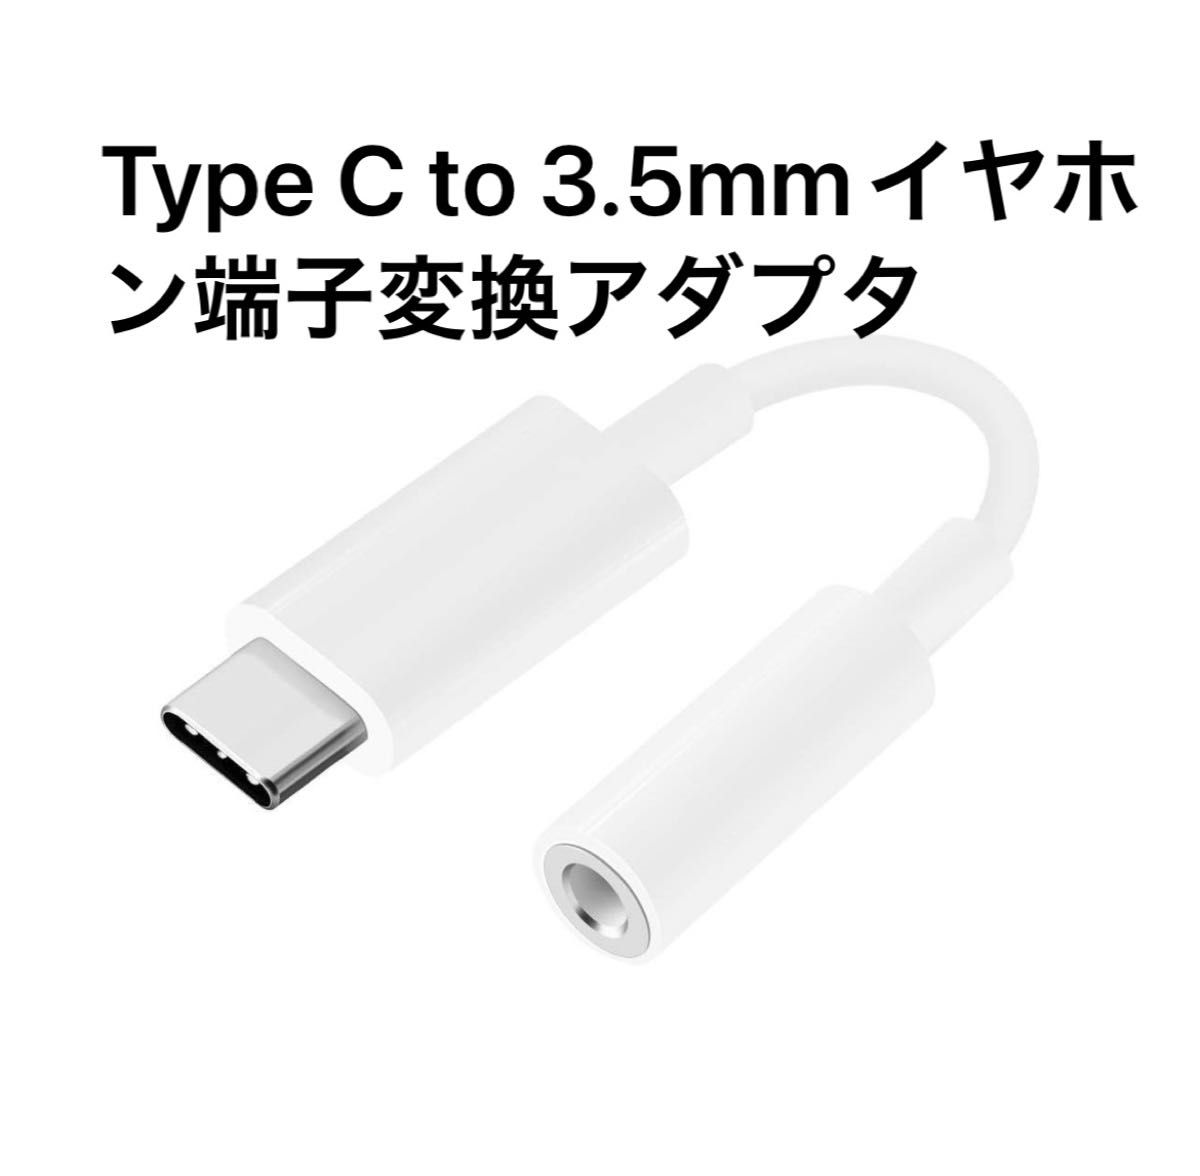 Type C to 3.5mmイヤホン端子変換アダプタ